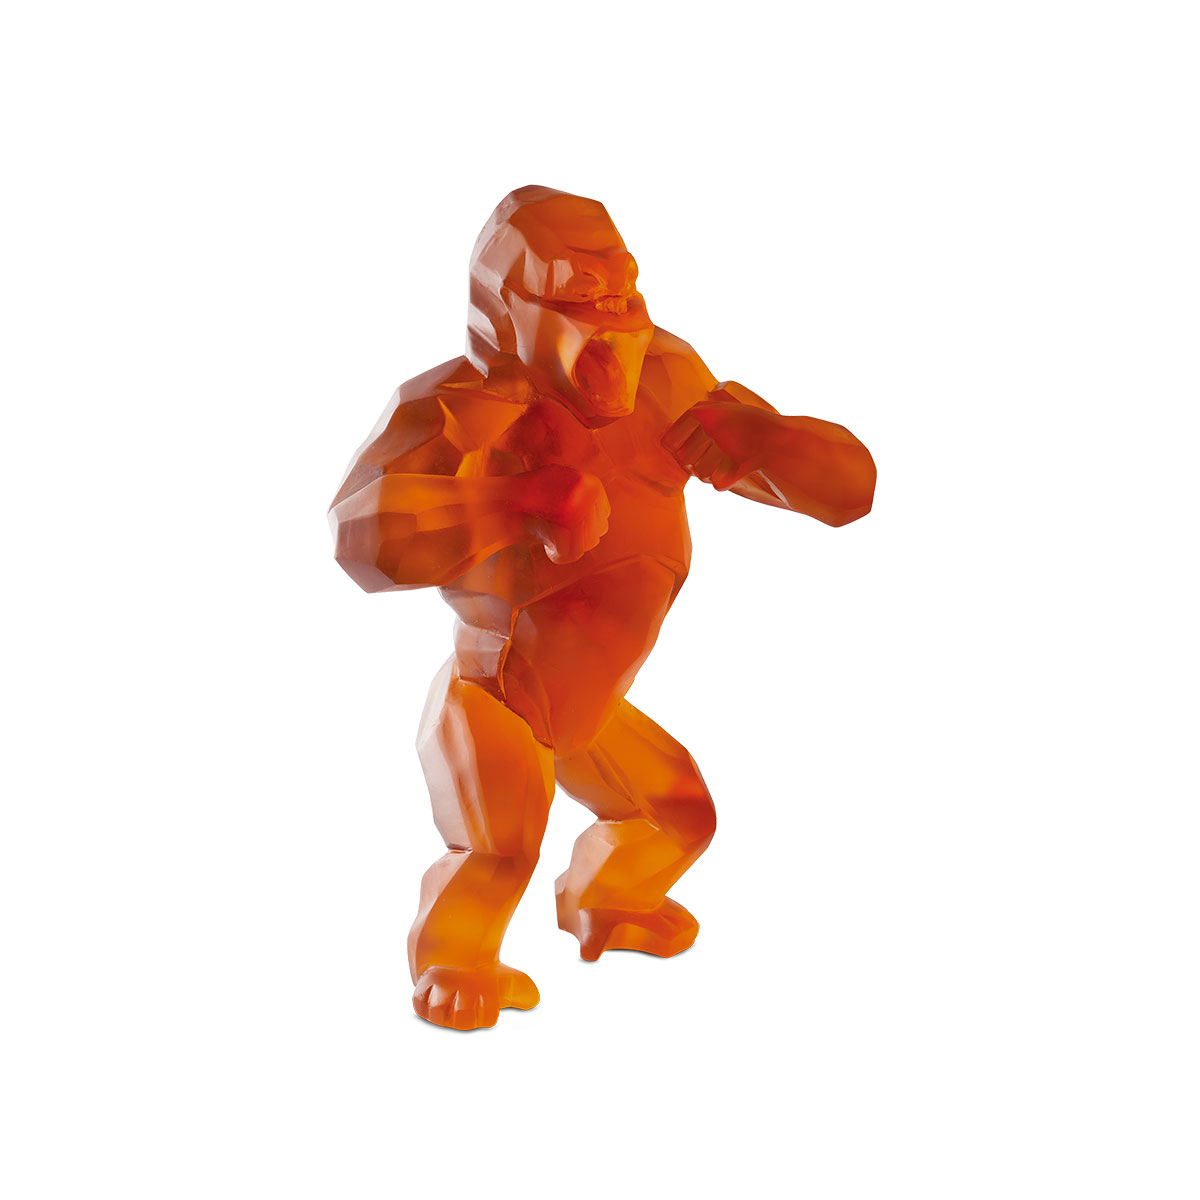 Daum Wild Kong in Orange by Richard Orlinski, Limited Edition Sculpture